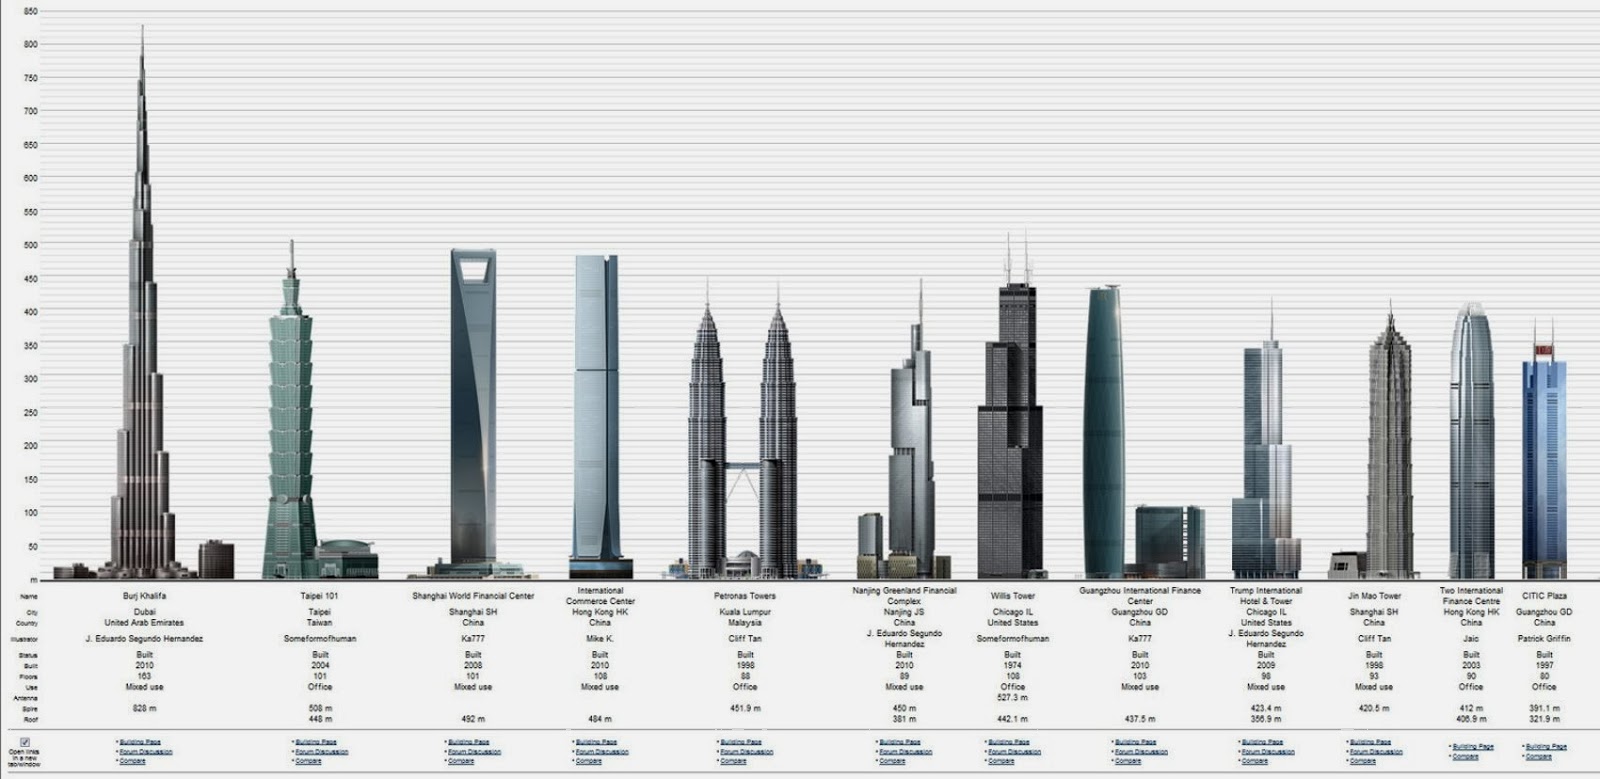 Urutan Bangunan Tertinggi Di Dunia Buatbest Bangunan Tertinggi Di Dunia Burj Khalifa Dubai Saat Ini Urutan Kelima Gedung Tertinggi Di Dunia Urutan Ketiga Bangunan Tertinggi Di Dunia Dengan Lantai